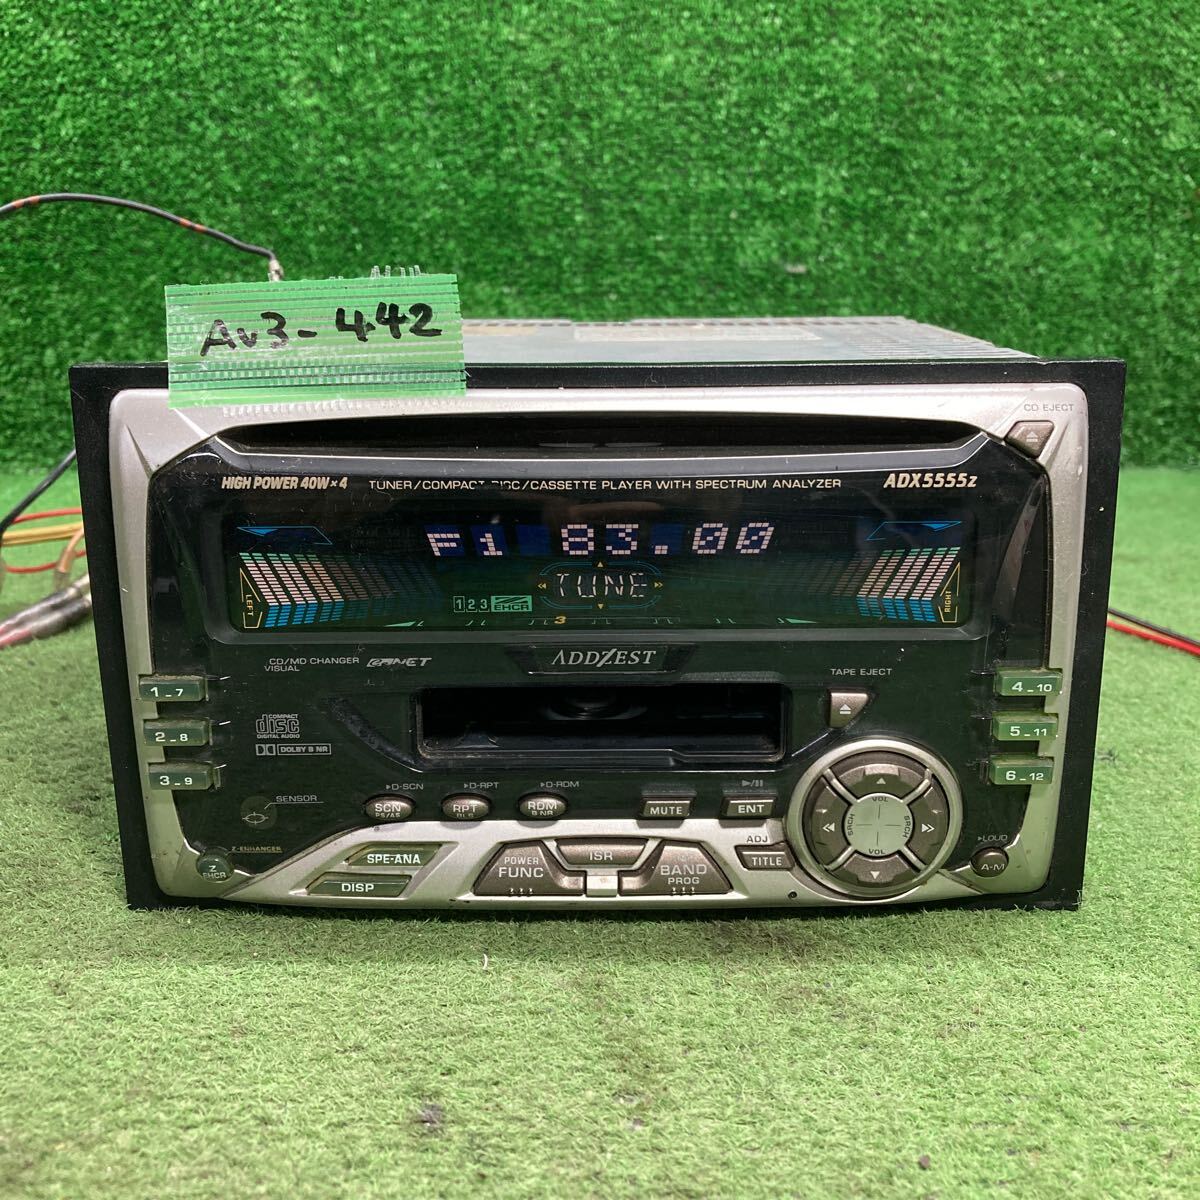 AV3-442 супер-скидка машина стерео ADDZEST PS-2181J 0125338 кассета FM/AM корпус только простой рабочее состояние подтверждено б/у текущее состояние товар 